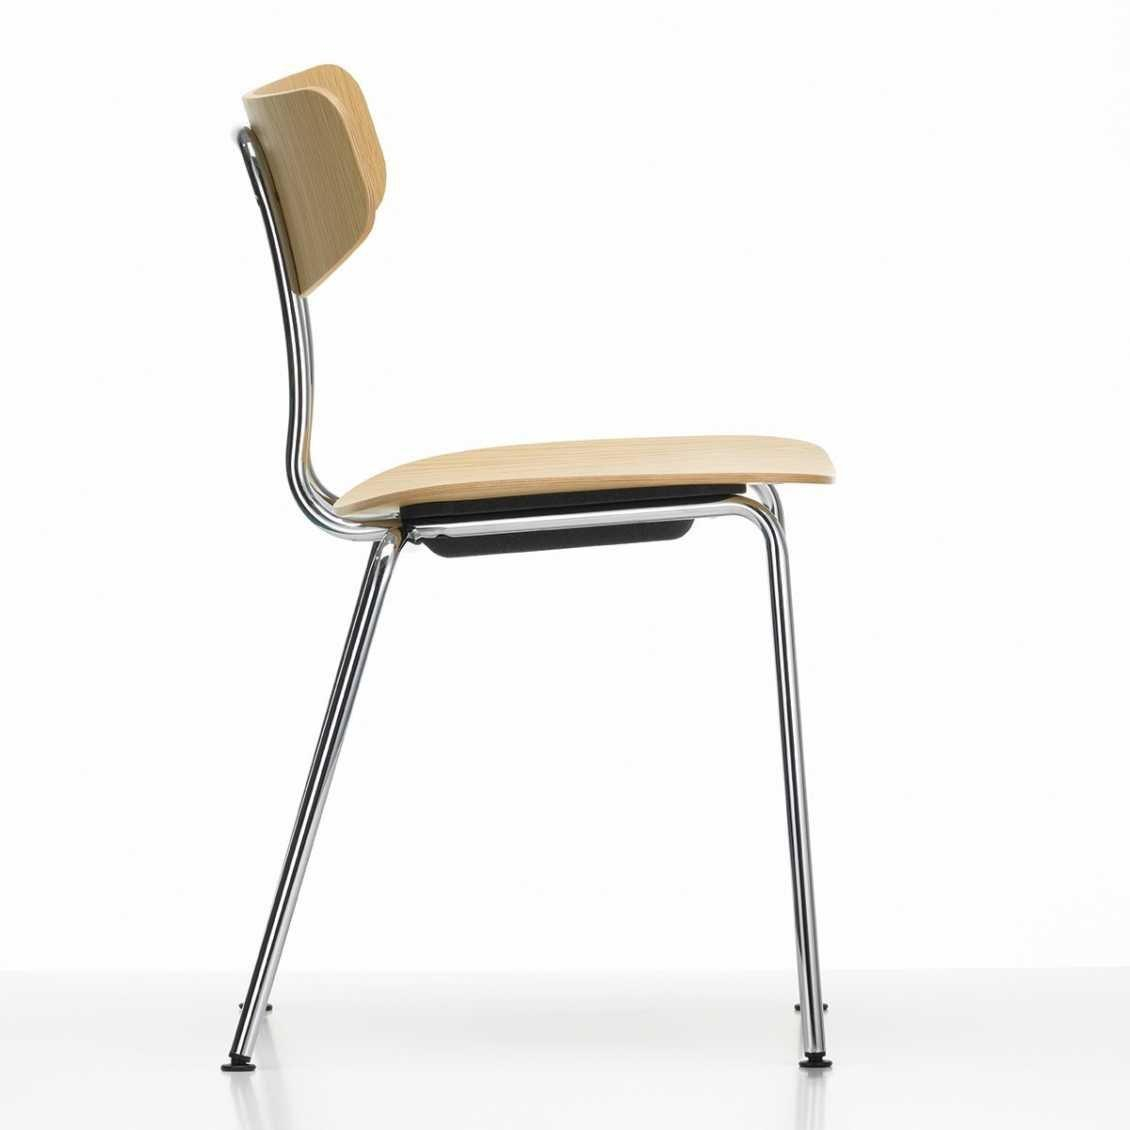 https://www.fundesign.nl/media/catalog/product/m/o/moca-stoel-eiken-chroom-detail-2.jpg